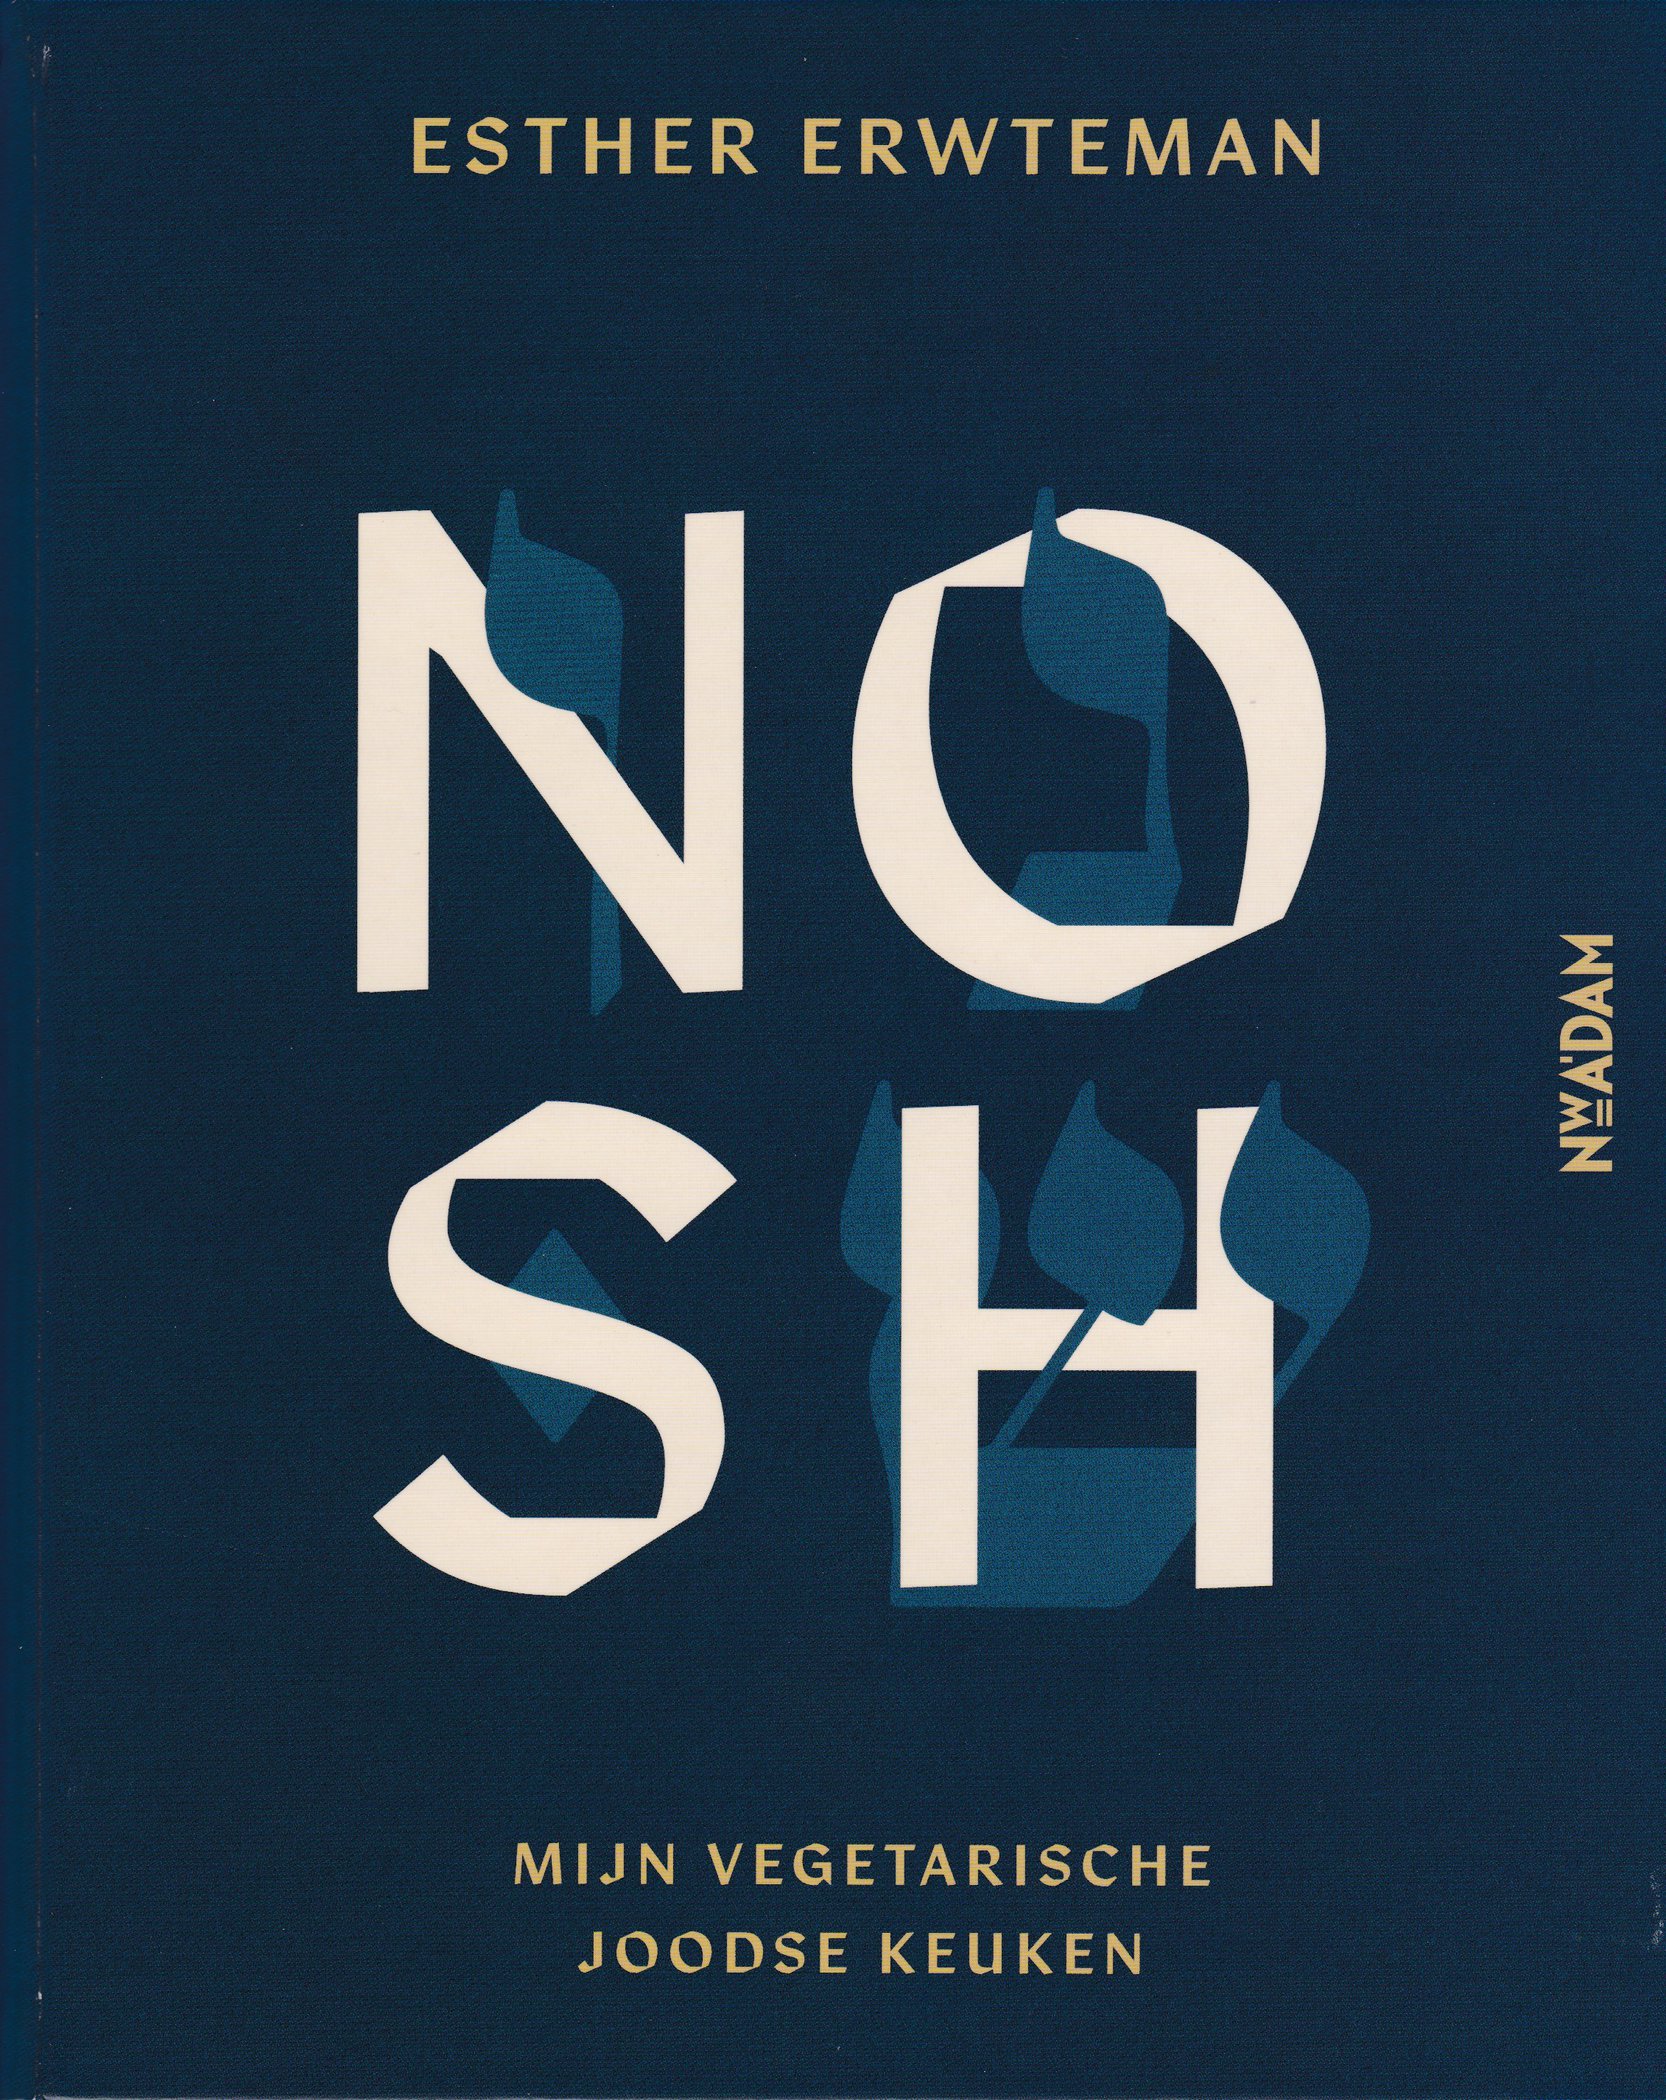 Cover van Nosh, van Esther Erwteman